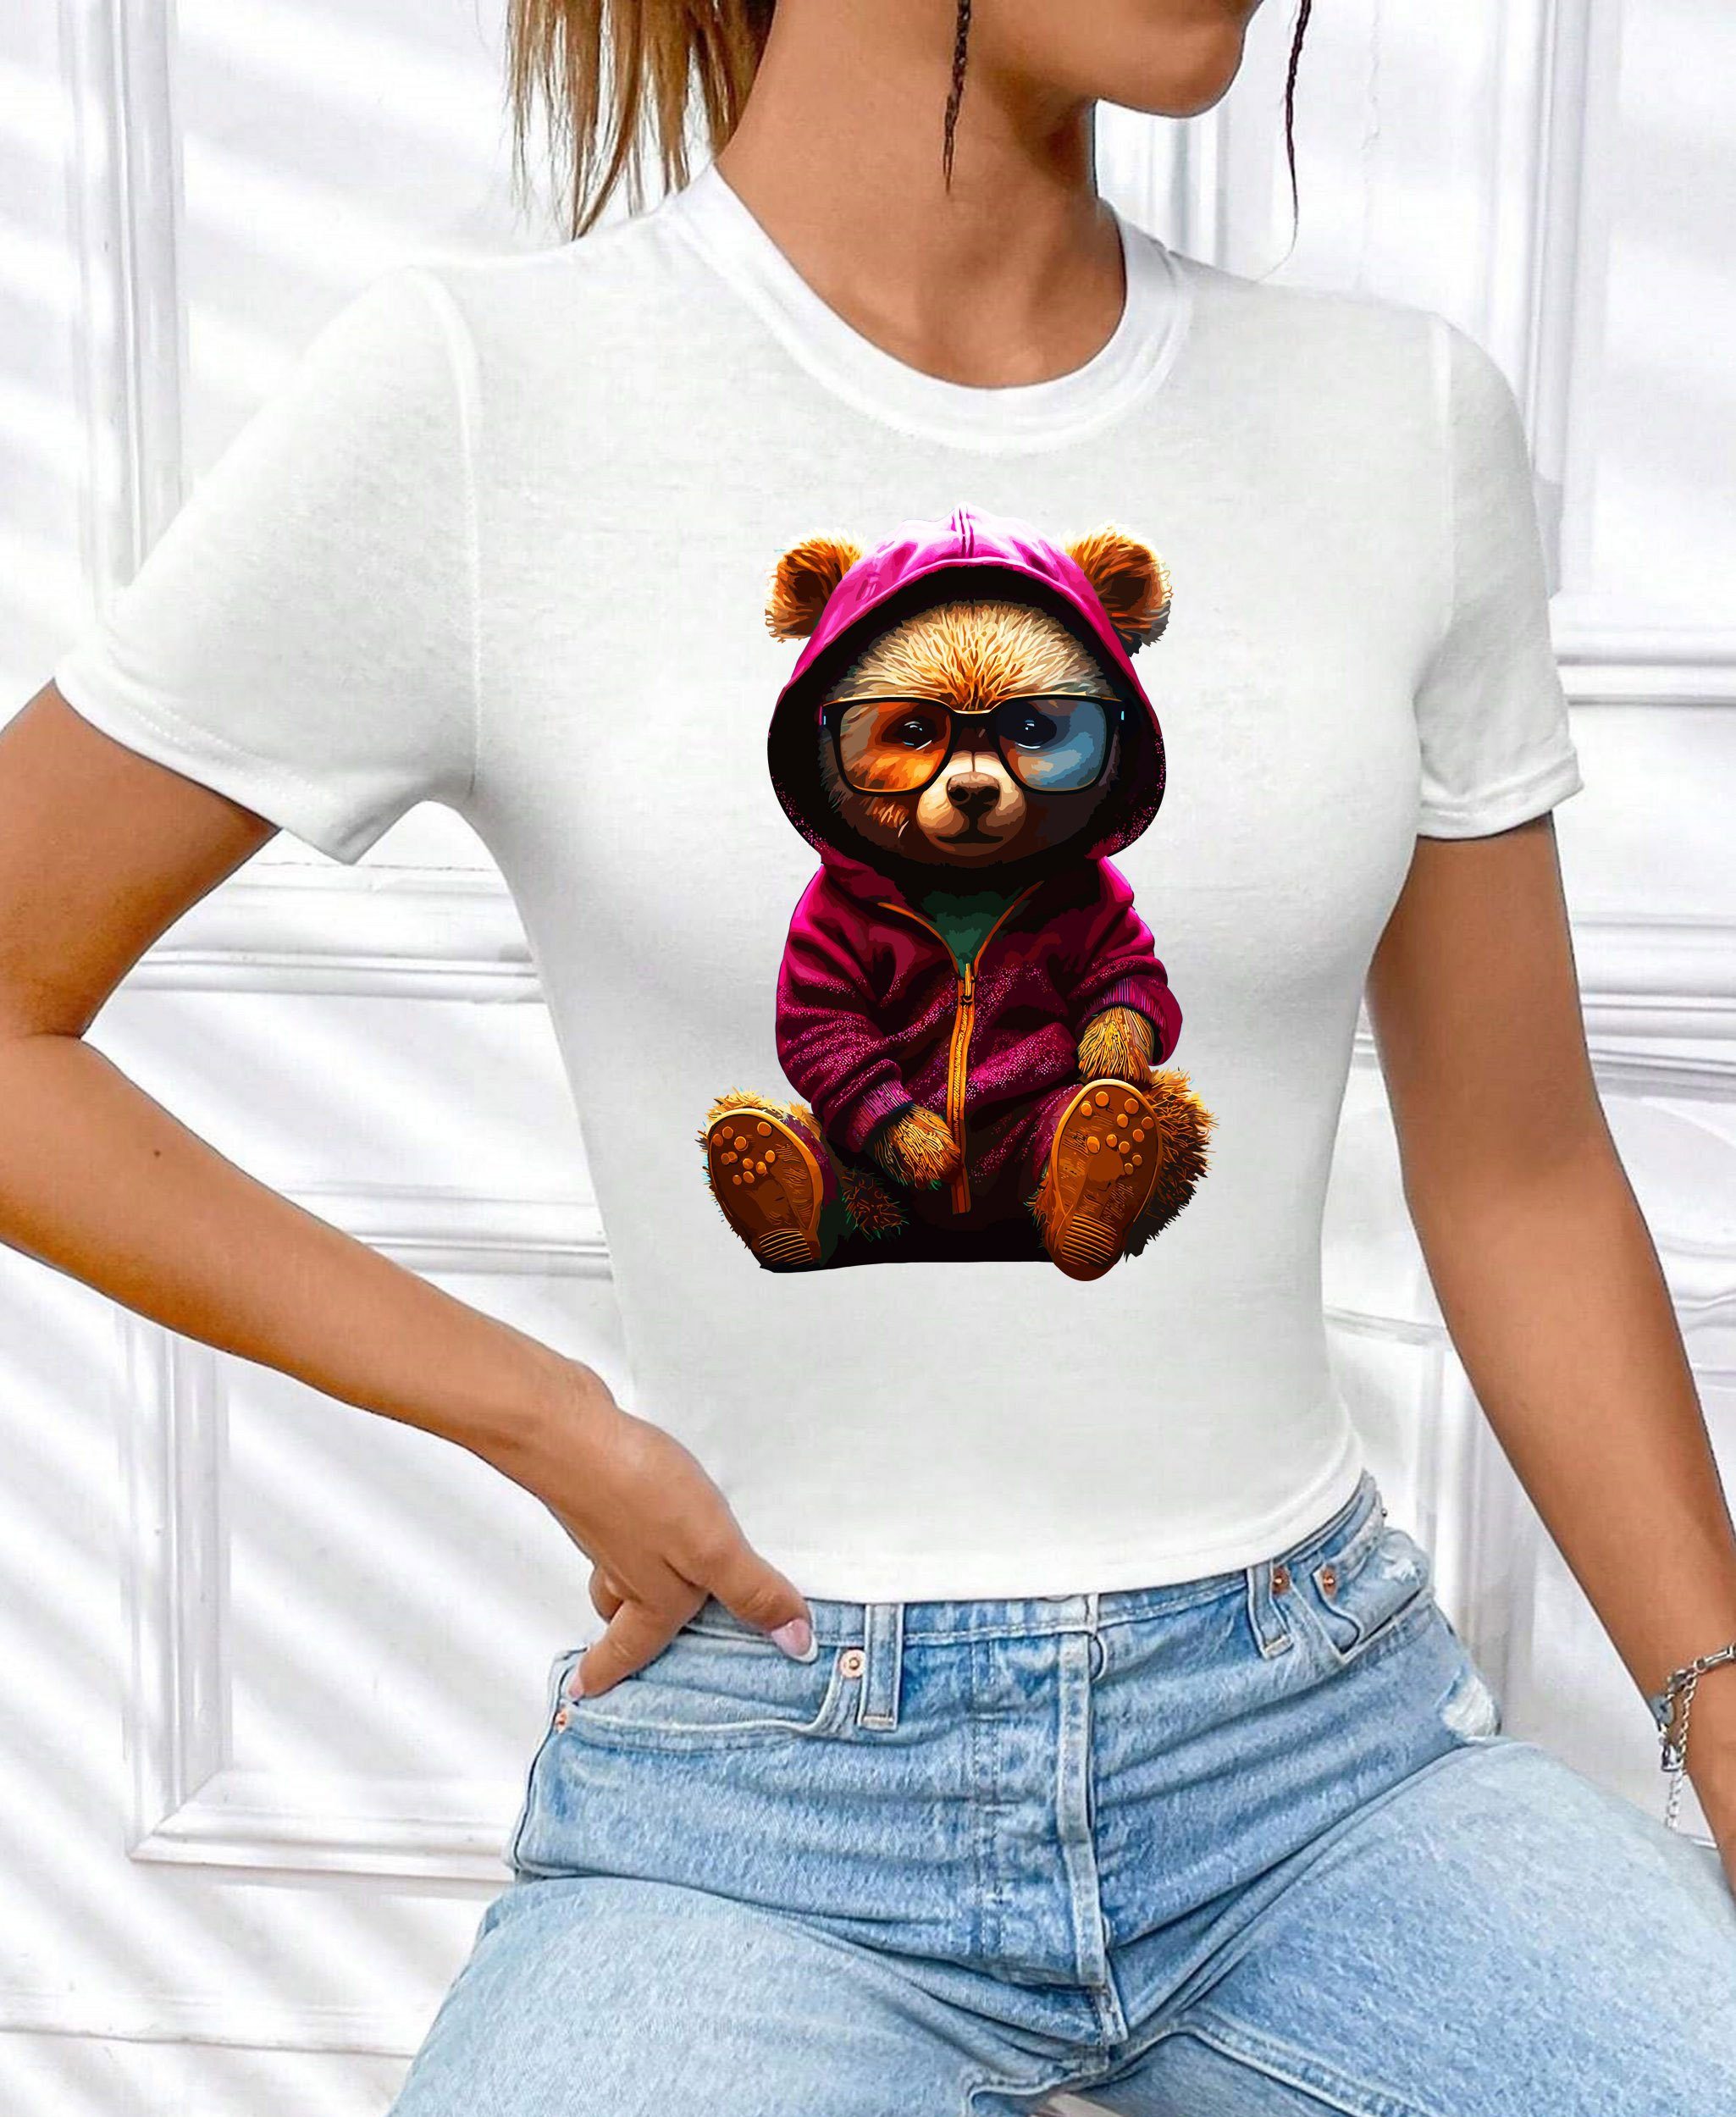 RMK Print-Shirt Damen T-Shirt Bär Originaldesign, Baumwolle, Brille Sommer Top aus Teddybär Unifarbe Rundhals mit süßer Weiß-Lila lizenziertem